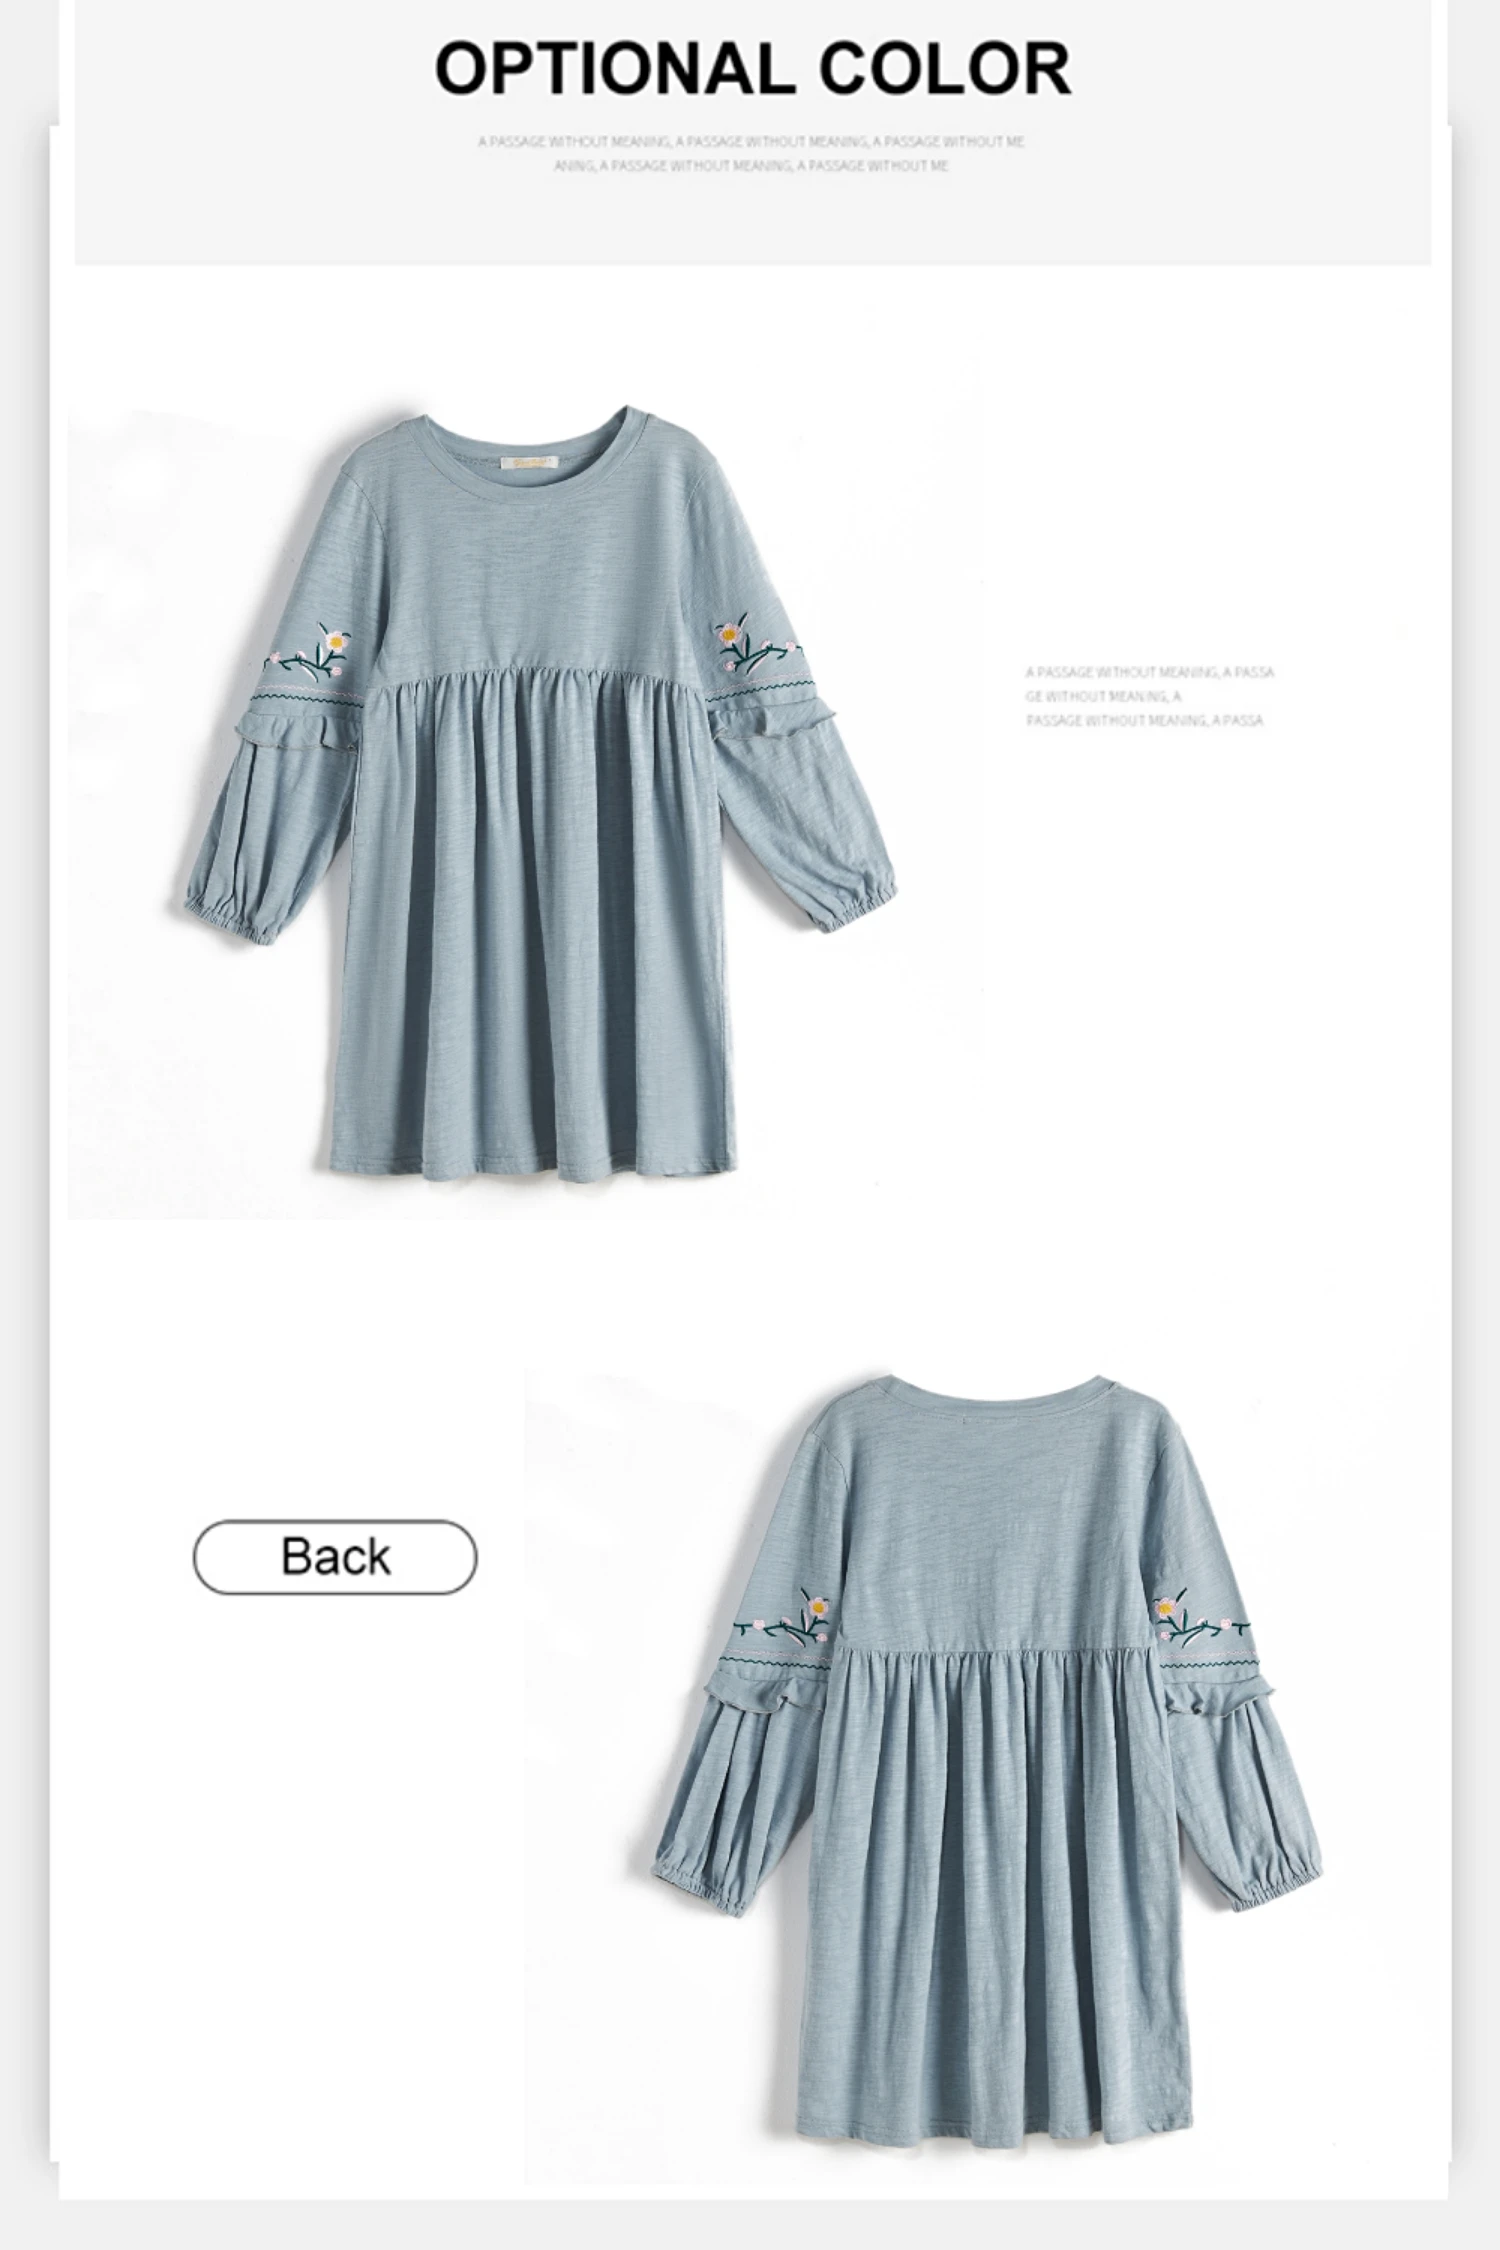 CupofSweet вышитые футболки с круглым вырезом платье для девочек Костюмы модное осеннее платье с длинными рукавами, элегантные Повседневное Детские платья для девочек